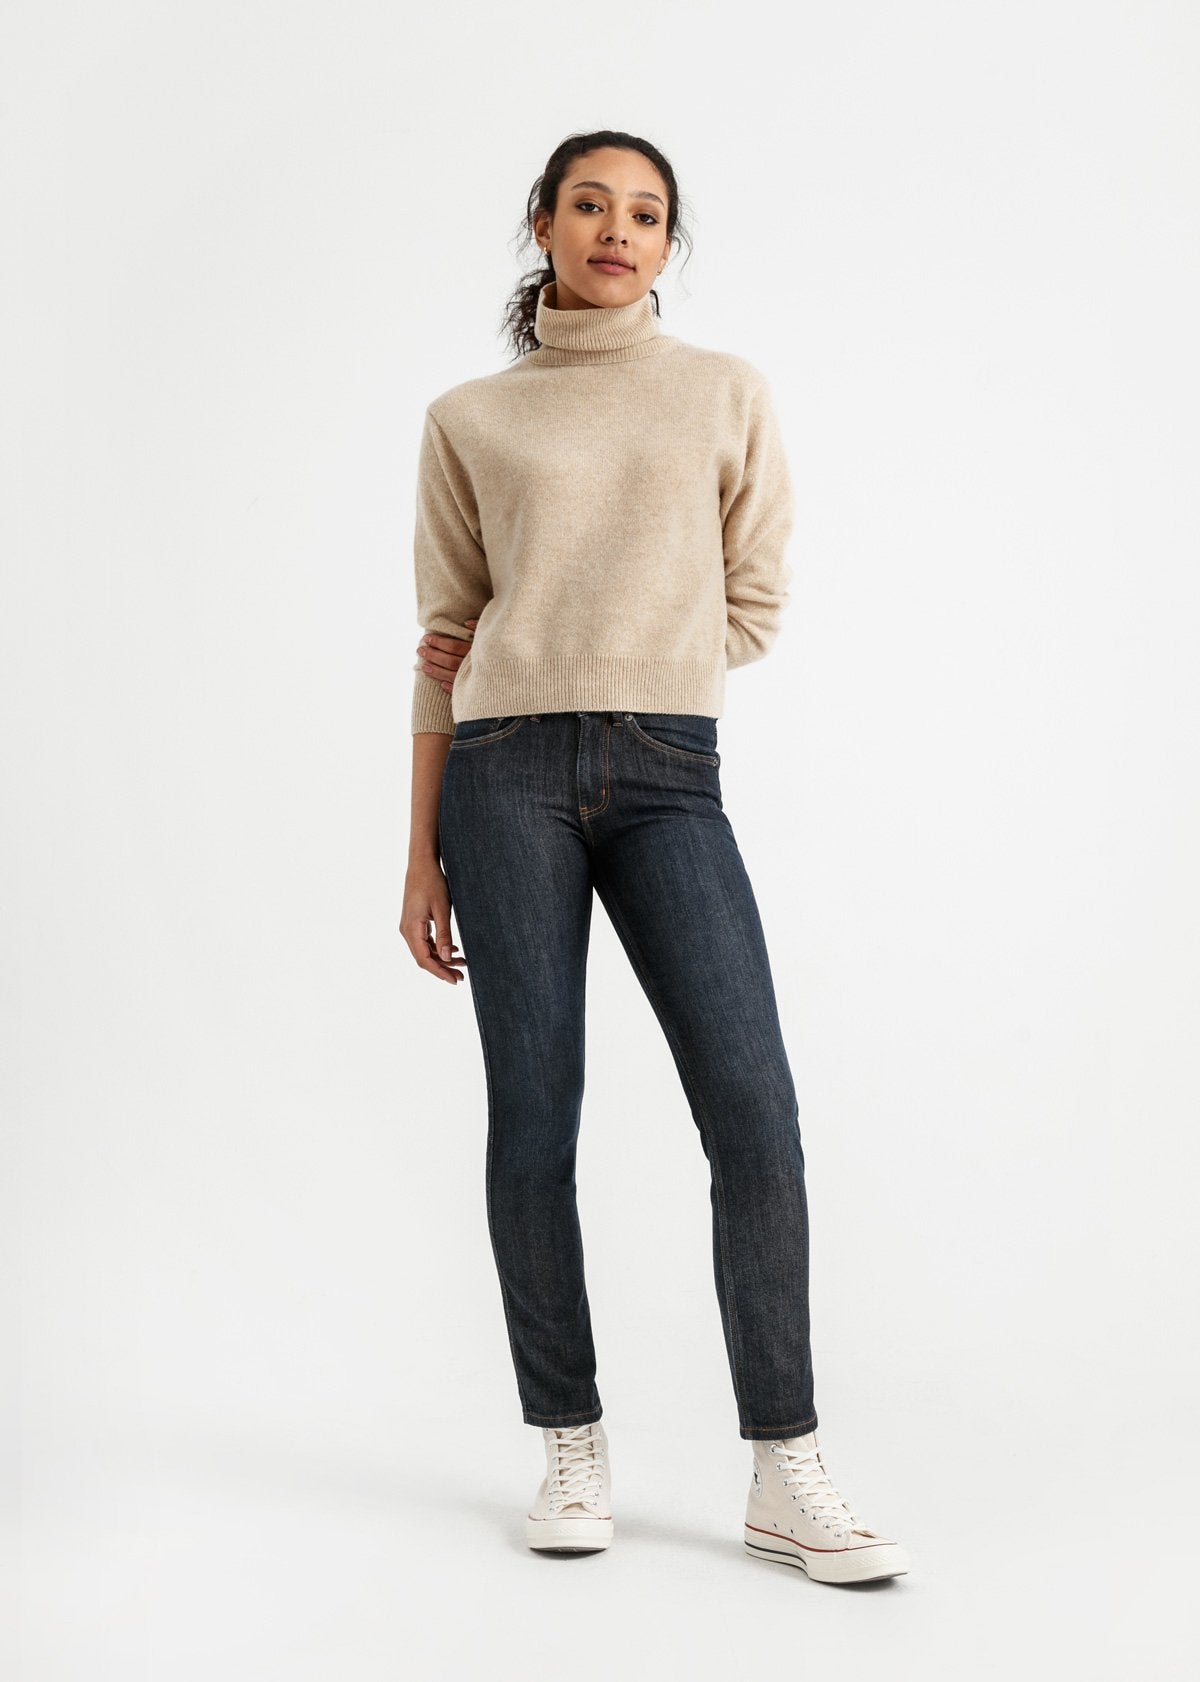 Lookbook Womens Winter Jeans Fleece Lined Slim Fit Stretch Warm